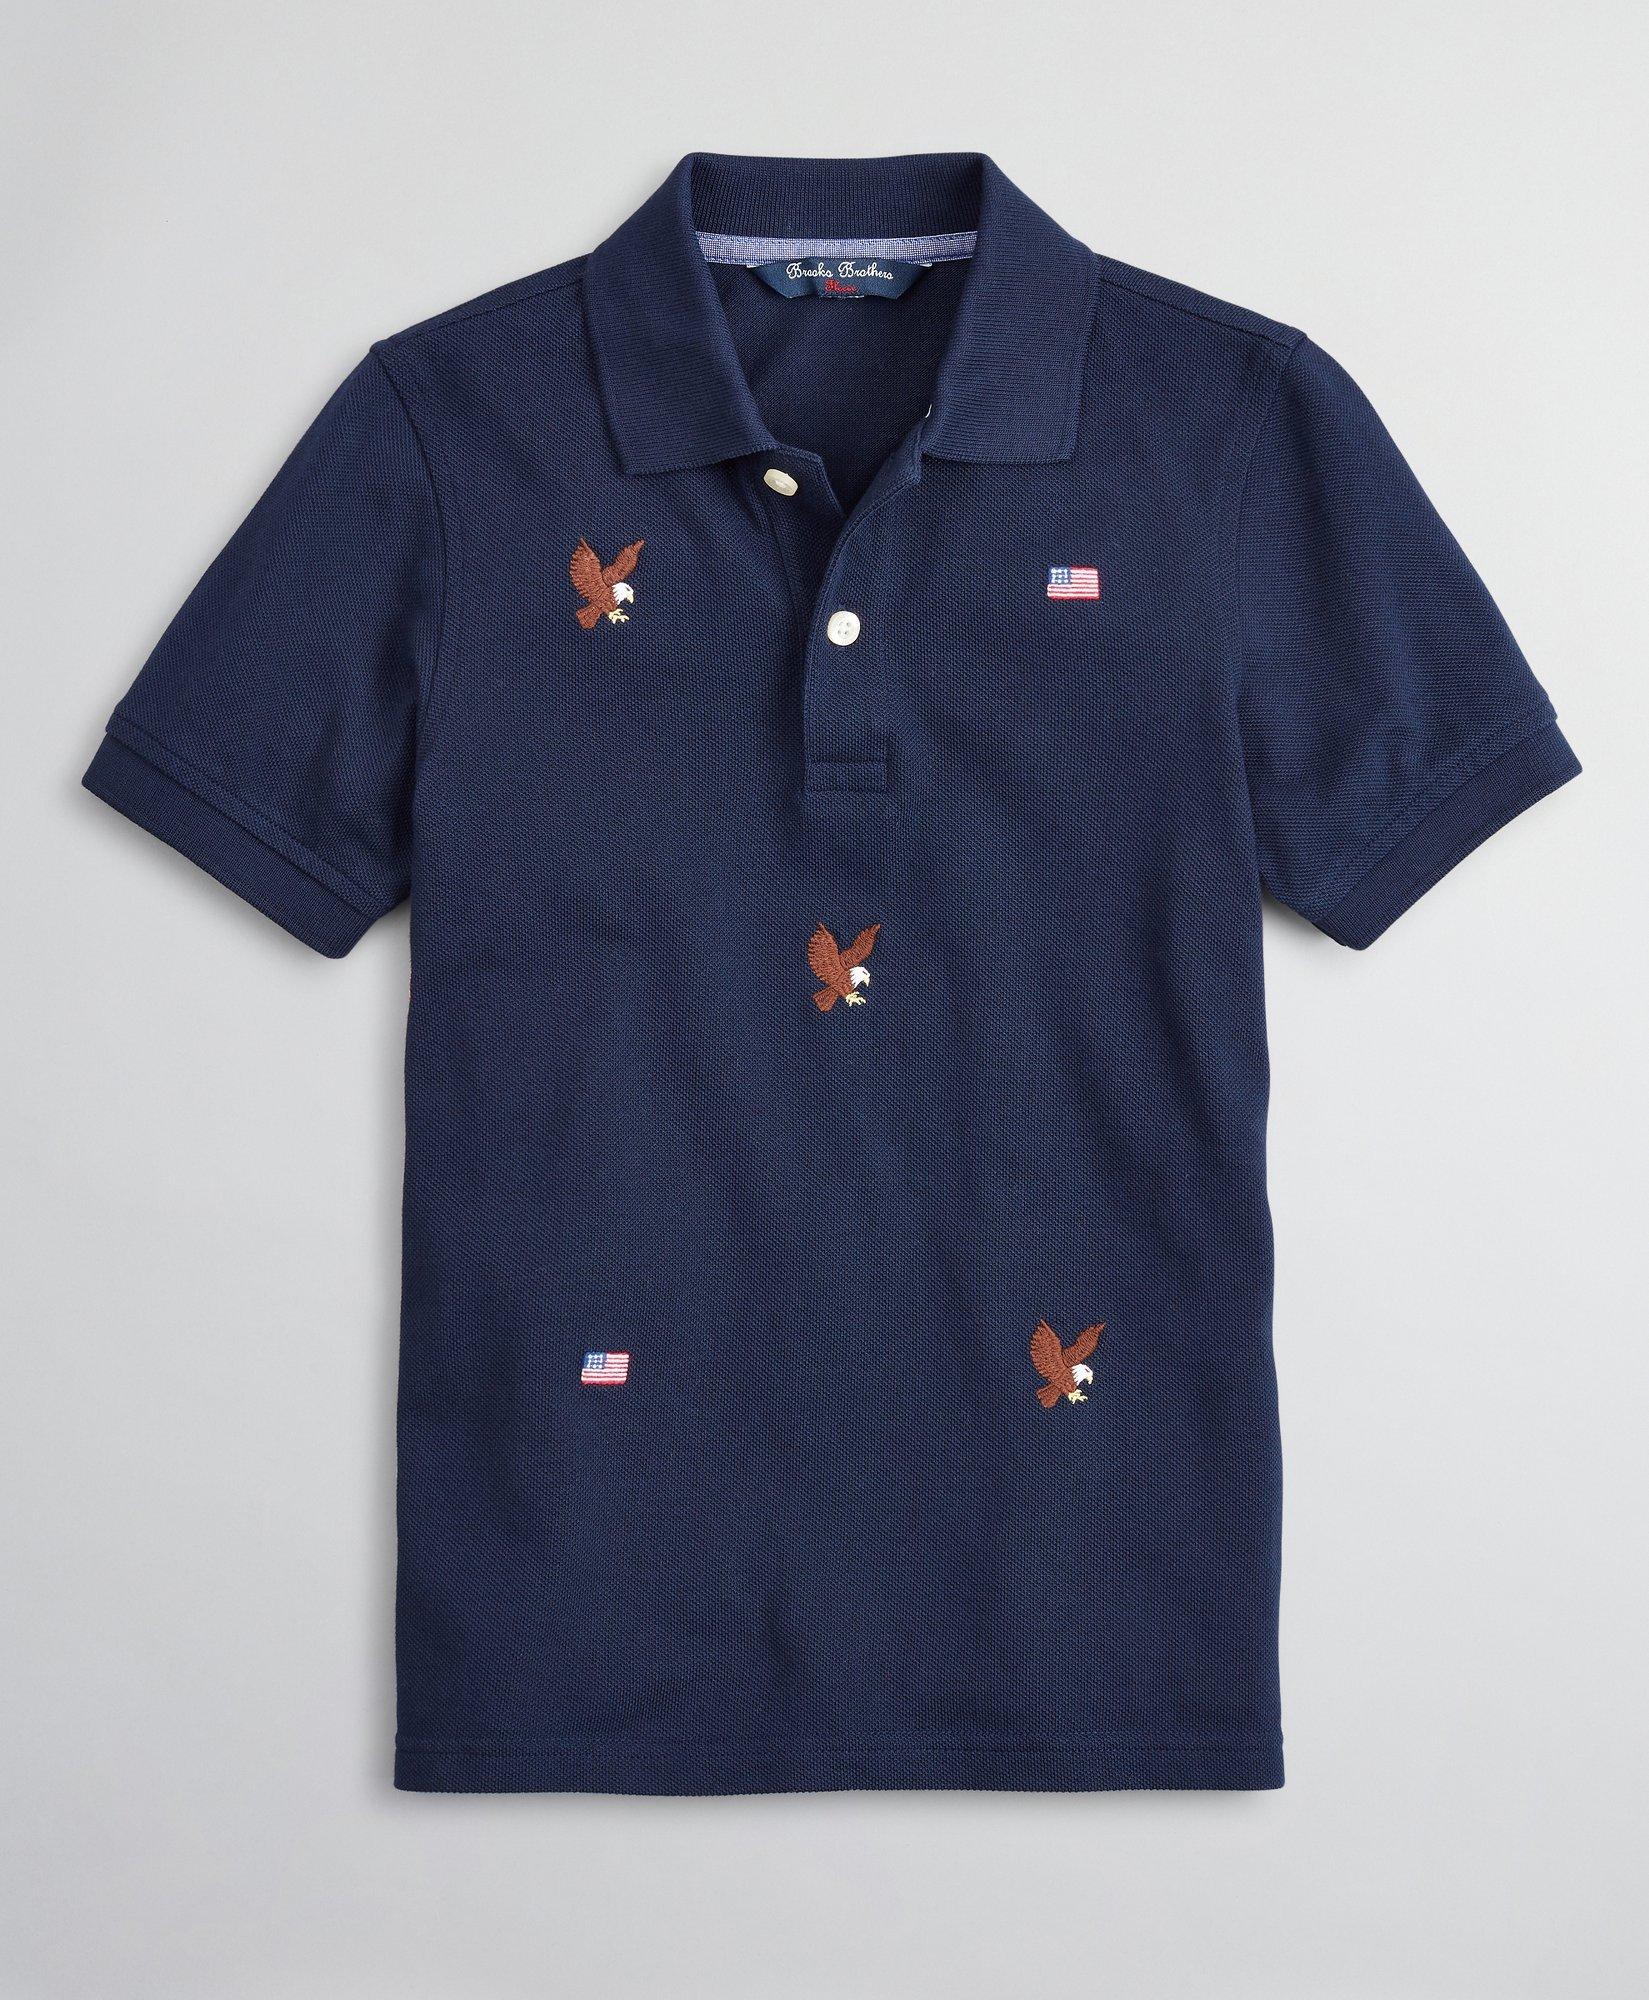 Boys Cotton Pique Embroidered Polo Shirt